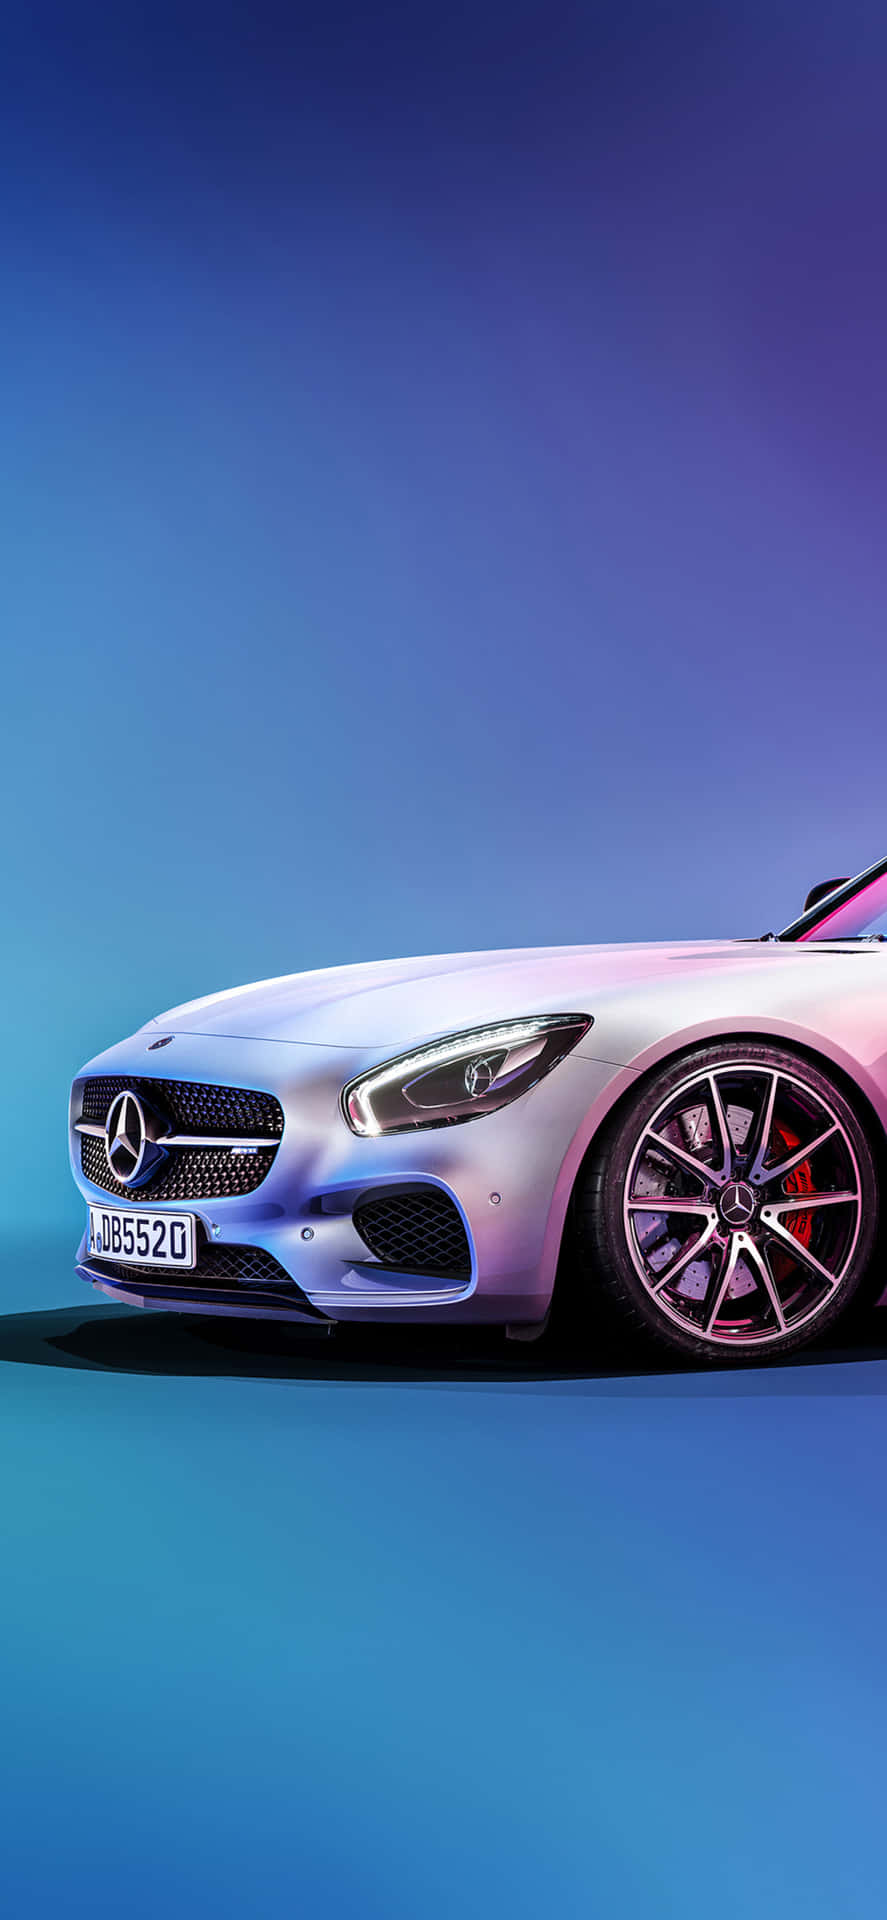 Weißerhintergrund Mit Blauer Kulisse Iphone Xs Mercedes Amg Hintergrund